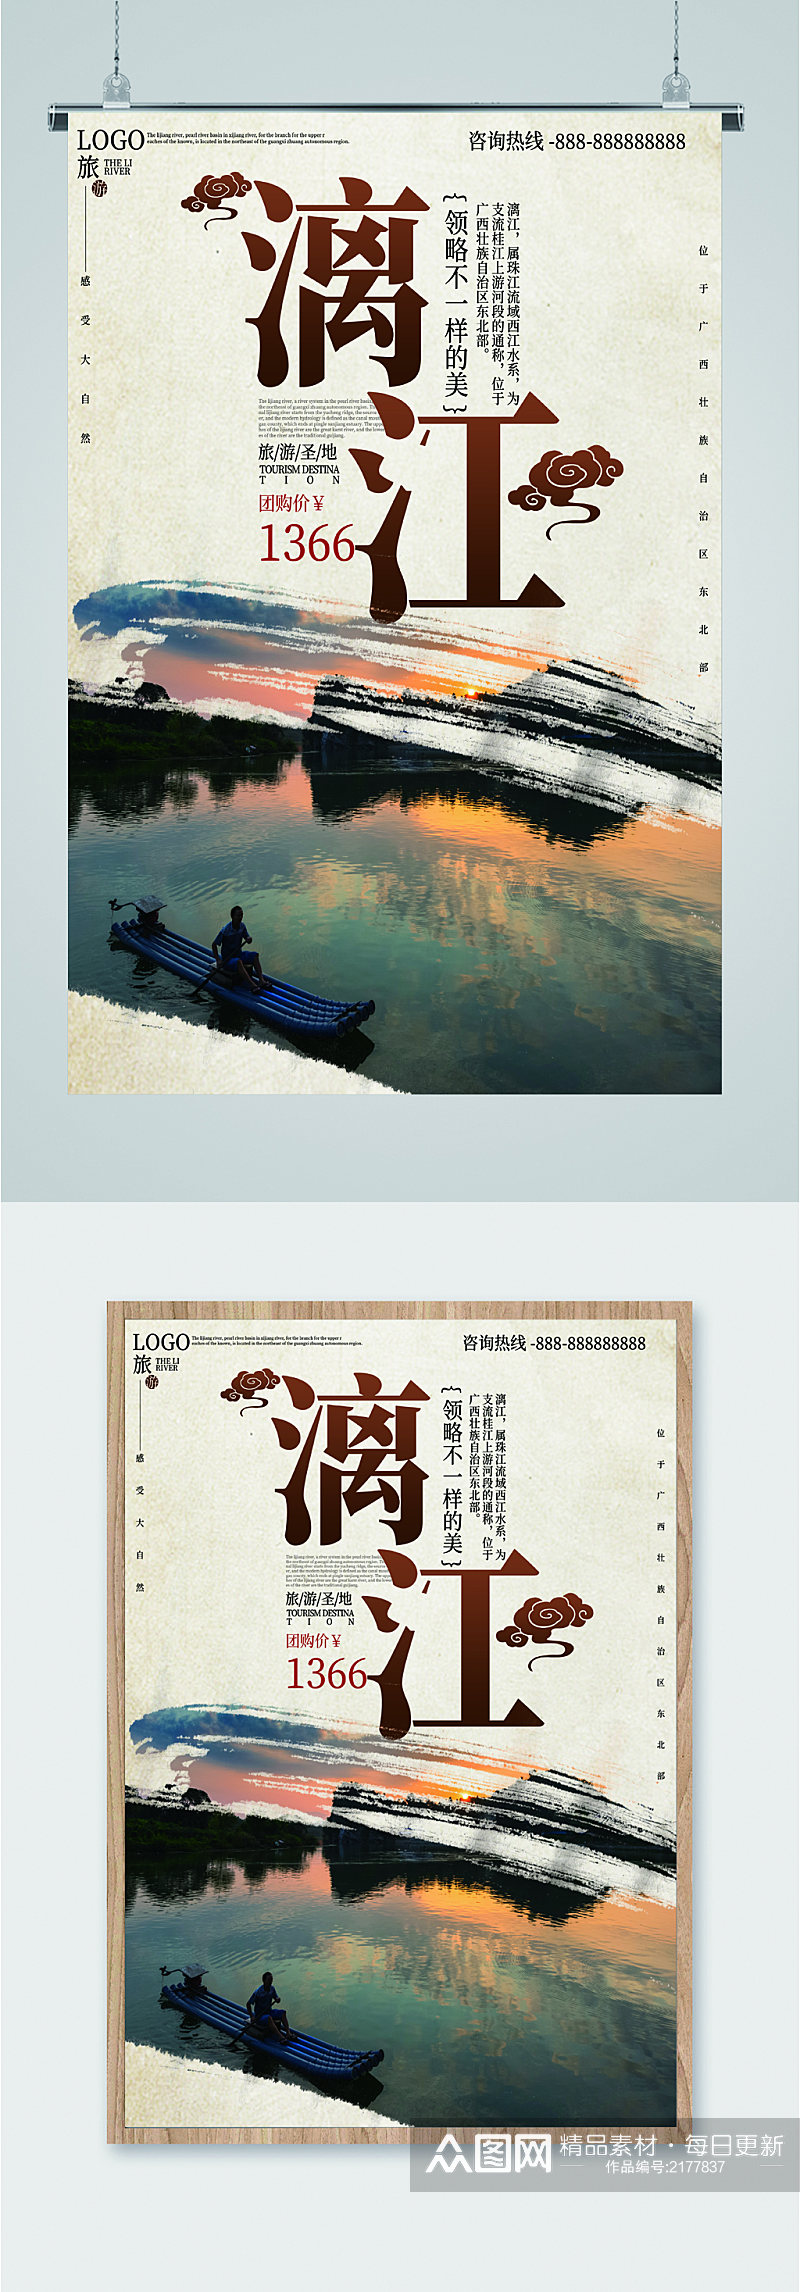 漓江风景旅游海报素材